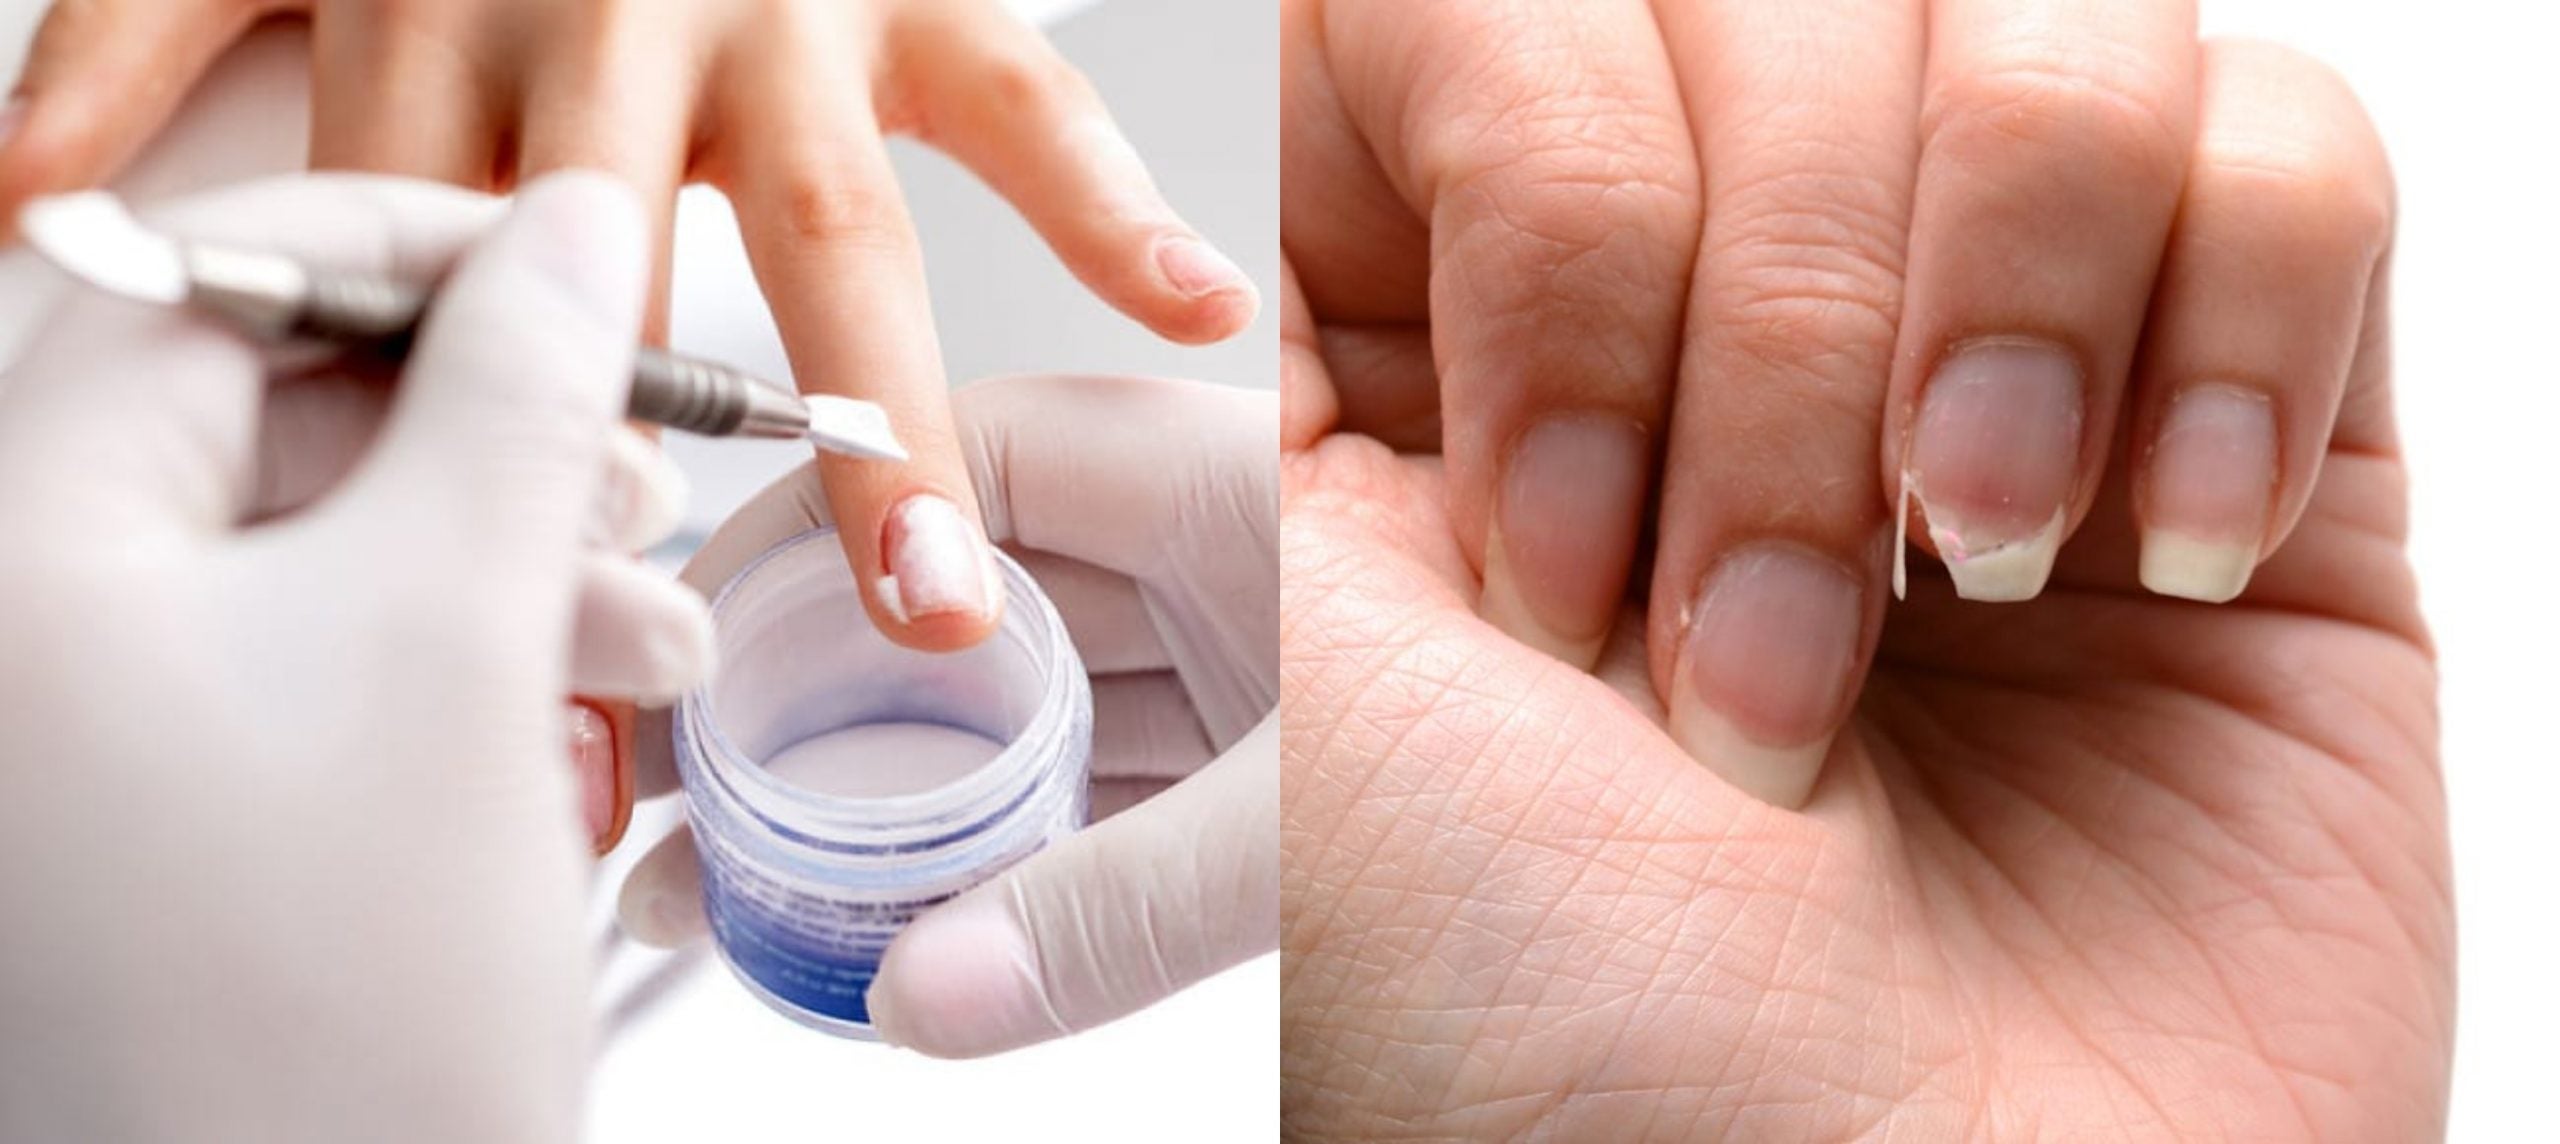 Efectos secundarios al aplicar excesivo acrílico en las uñas